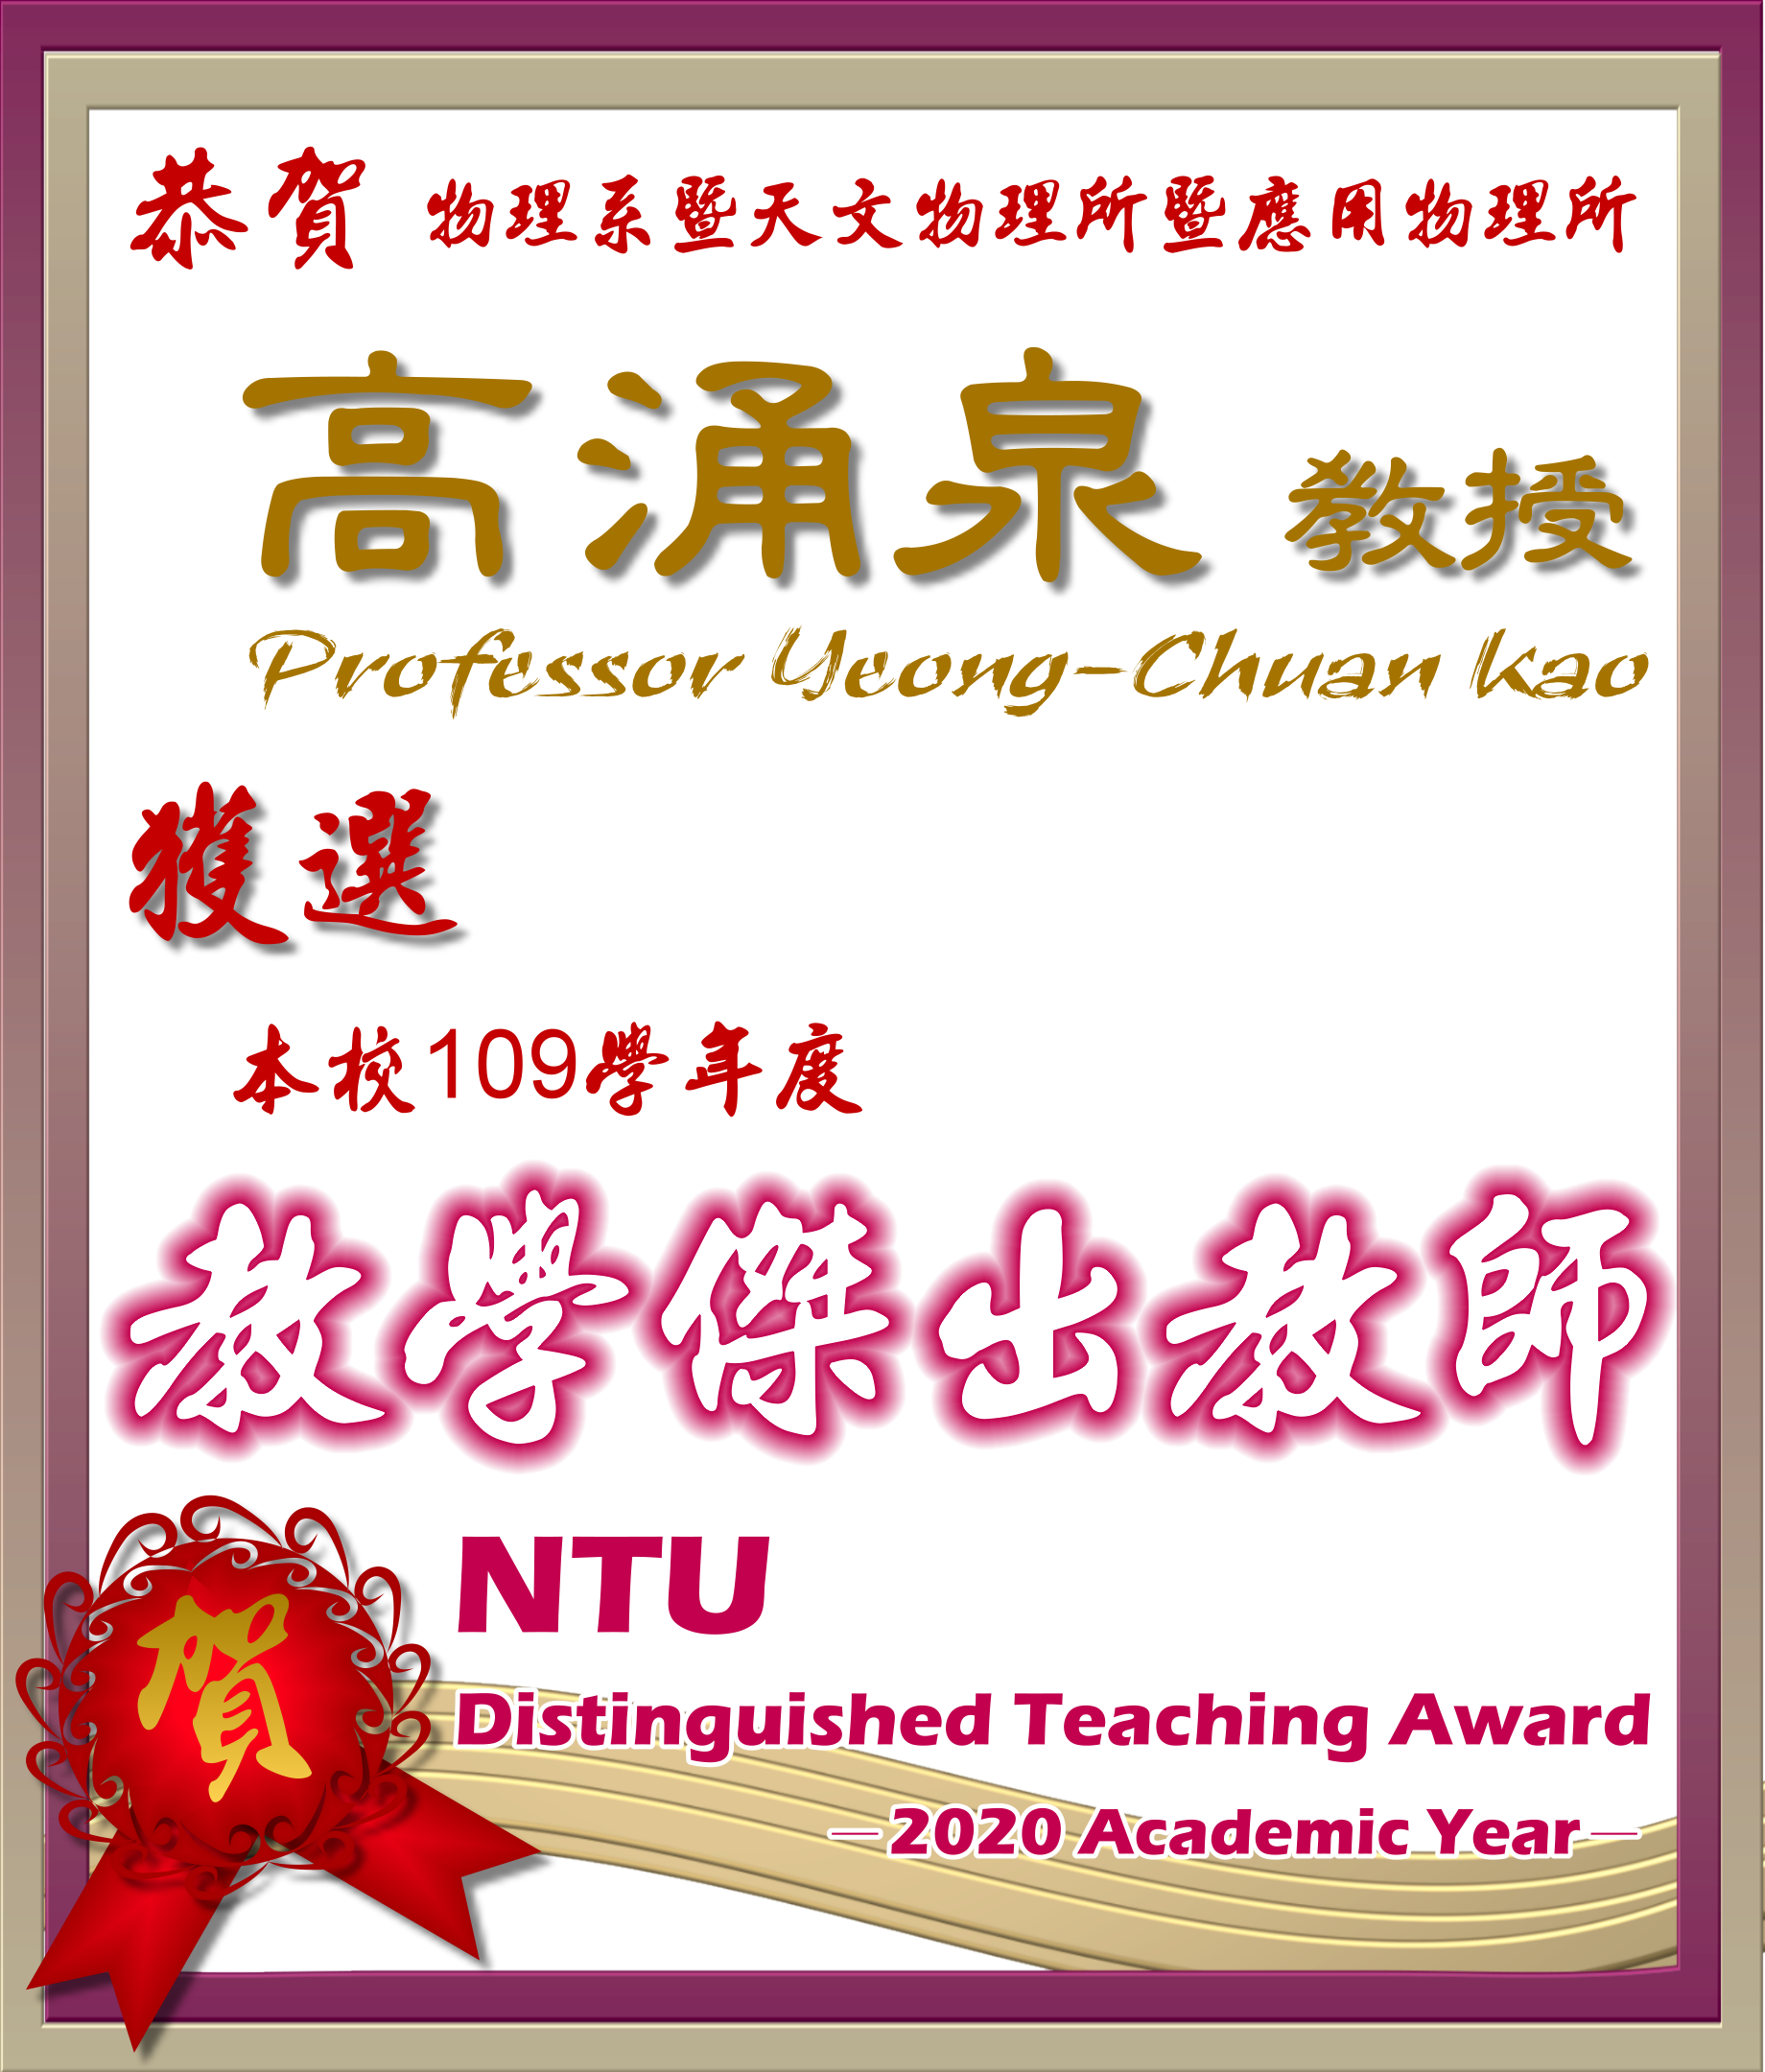  《賀》本系 高涌泉 教授 Prof. Yeong-Chuan Kao 獲選 109學年度《教學傑出教師》(NTU Distinguished Teaching Award)